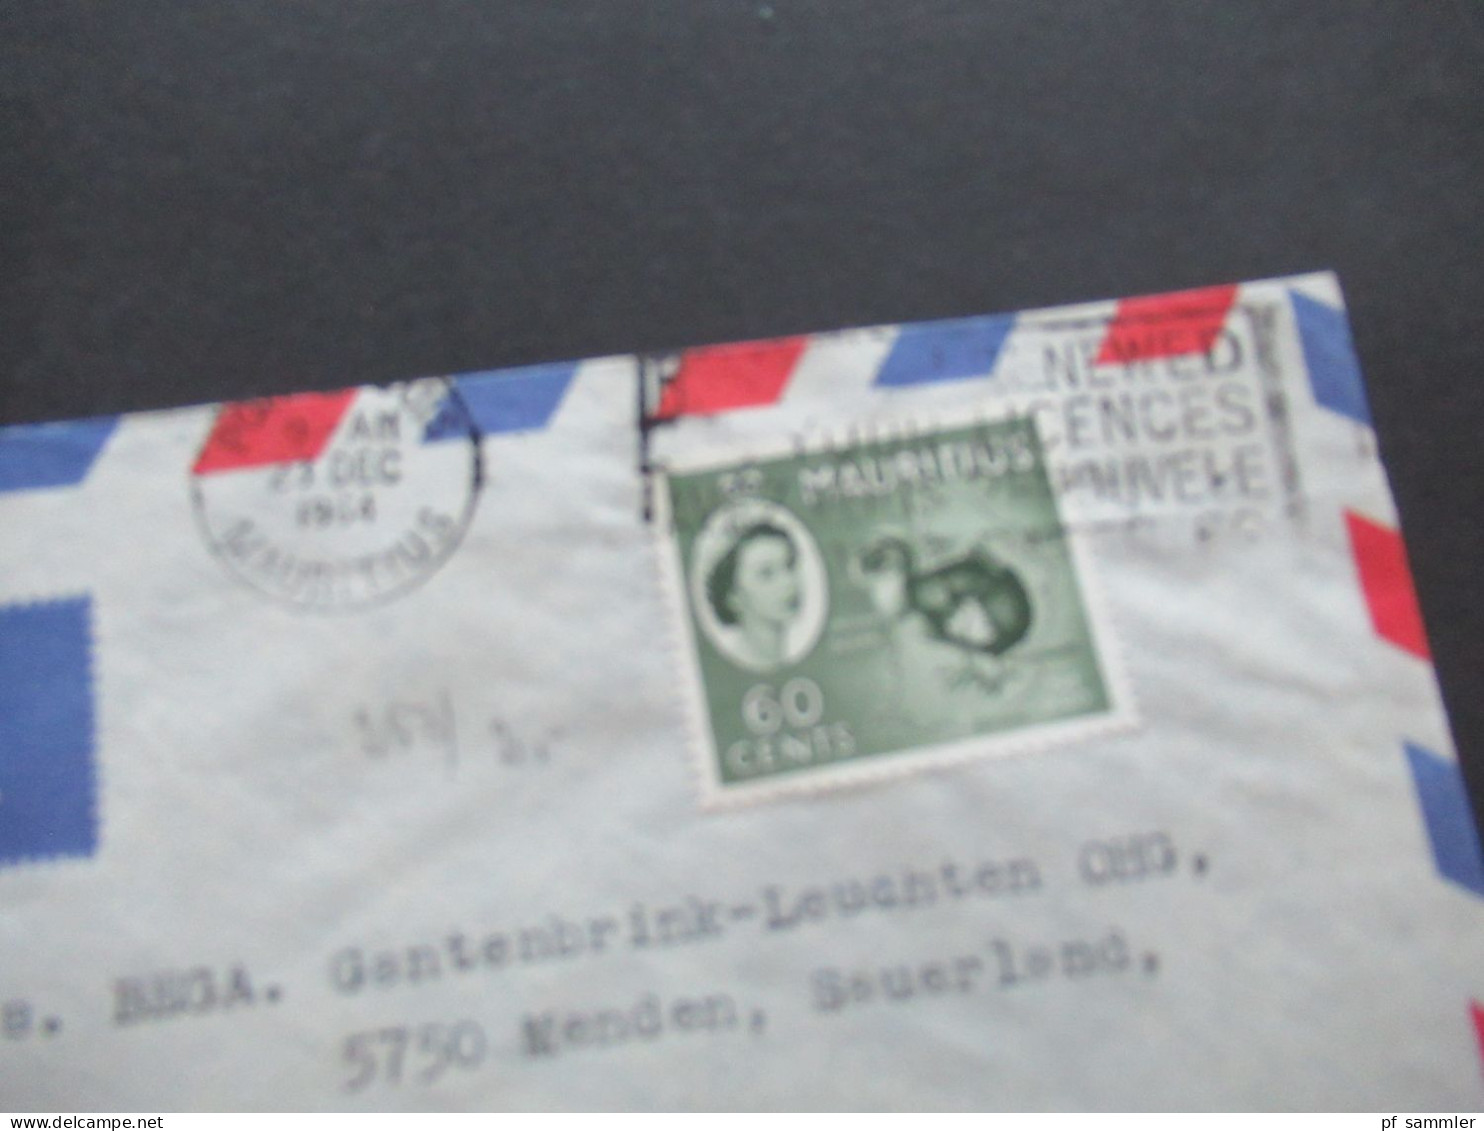 GB Kolonie Mauritius um 1964 By Air Mail Luftpost insgesamt 5 Belege / Firmenumschläge Port Louis Mauritius